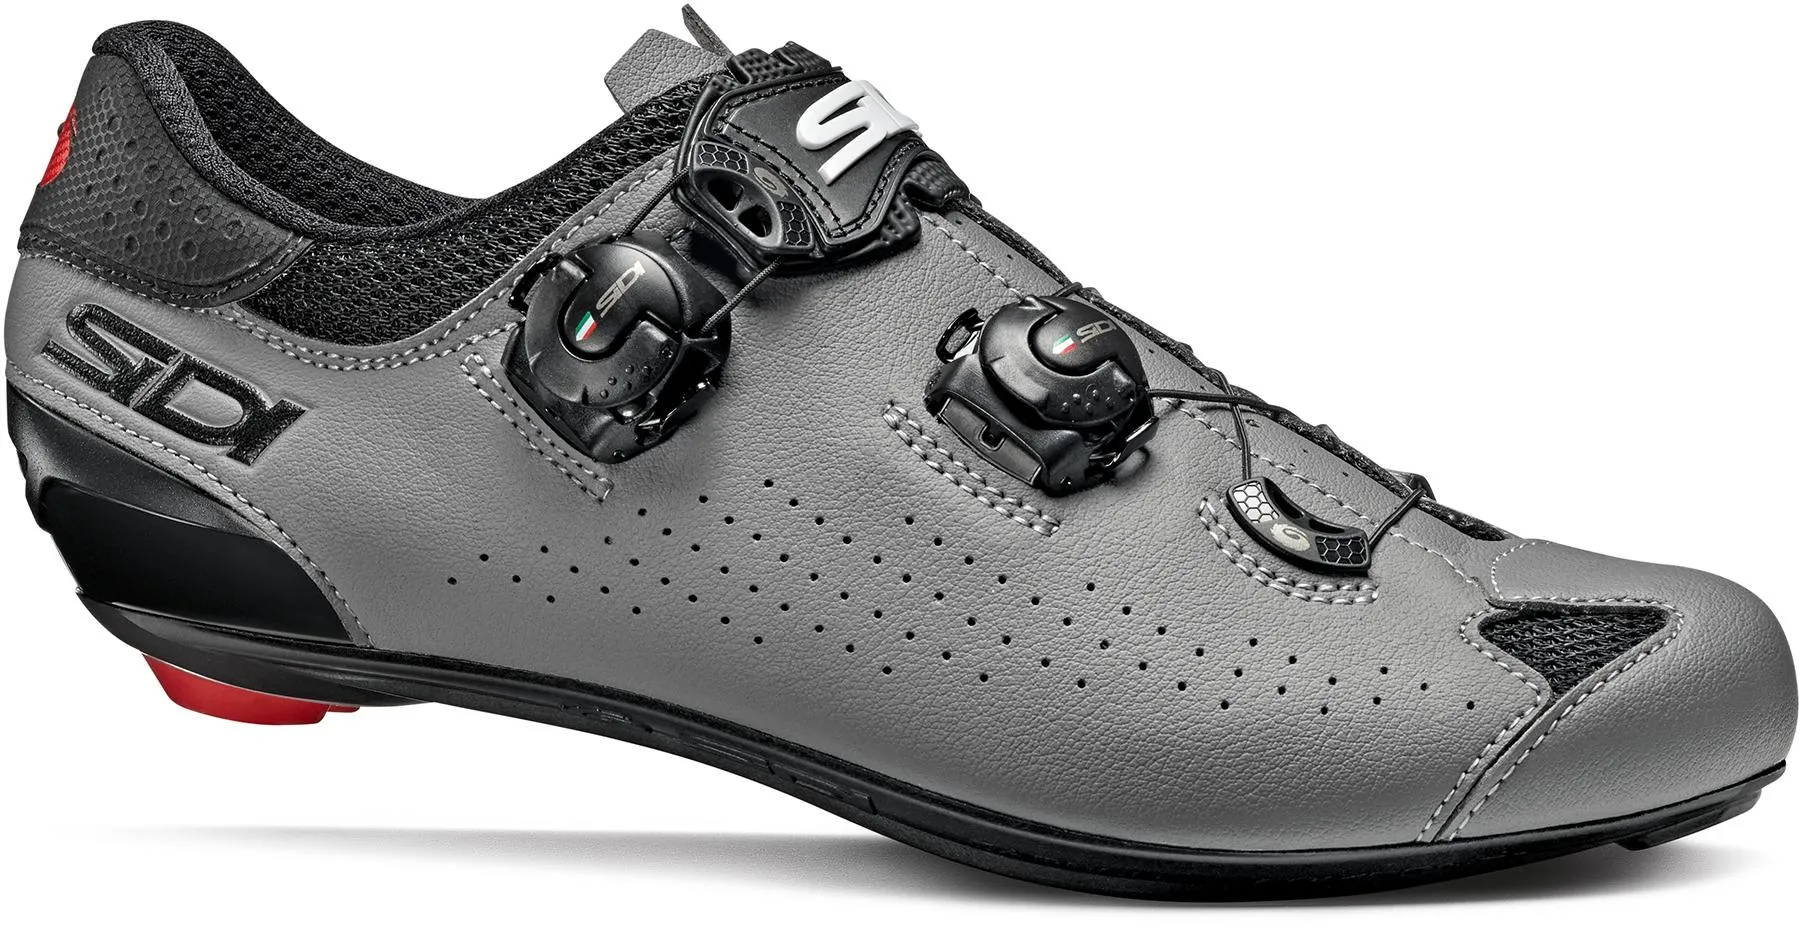  Genius 10 Road Shoes, Black/Grey